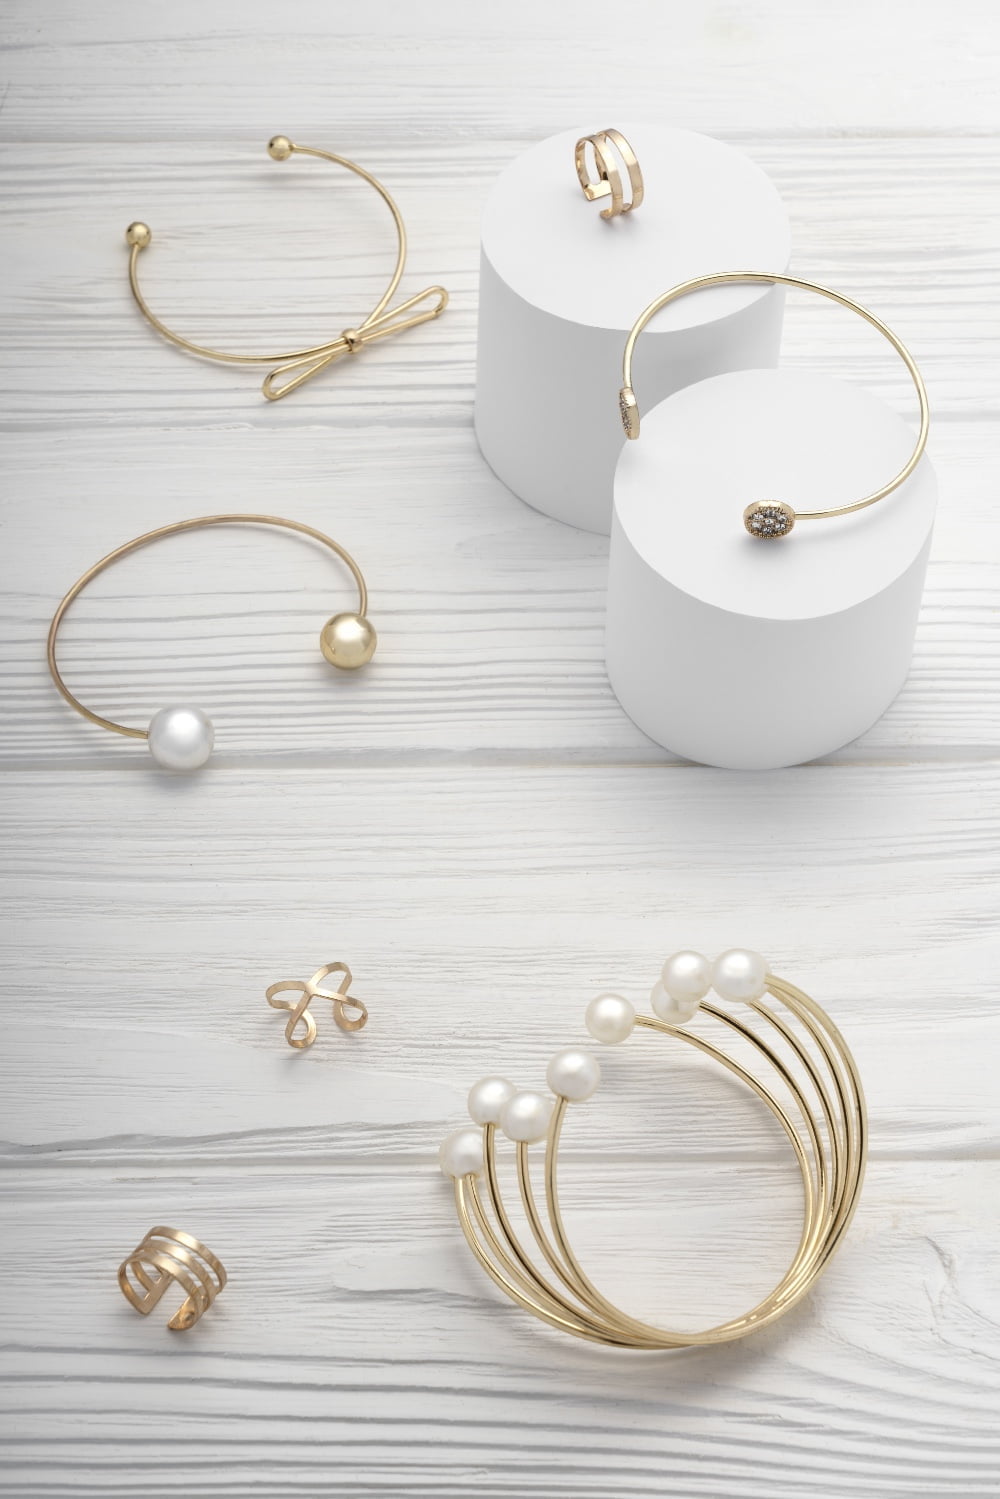 Pendientes y pulseras en color dorado con perlas y un estilo minimalista